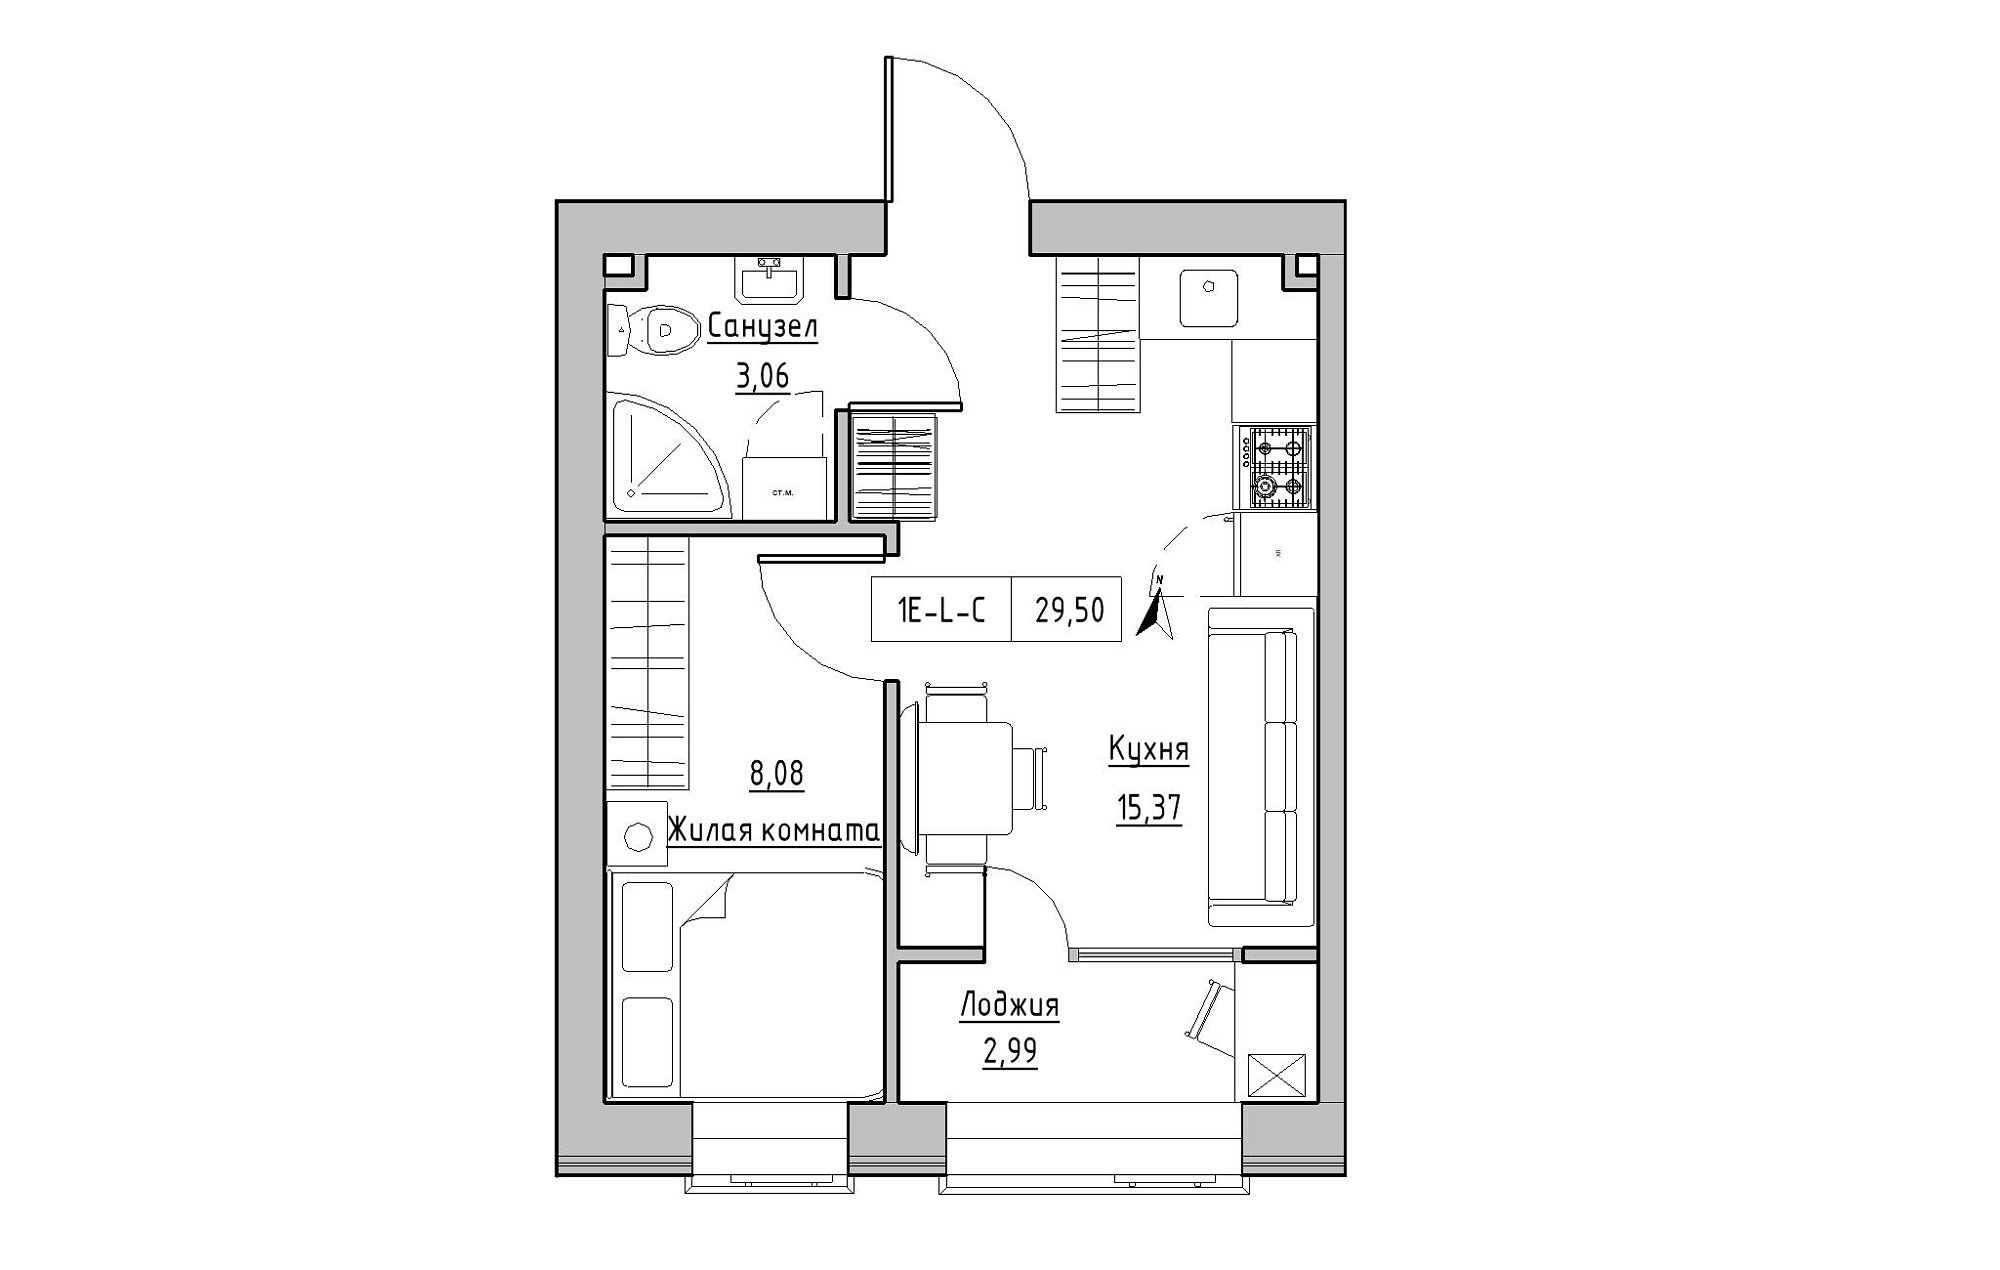 Планировка 1-к квартира площей 29.5м2, KS-019-02/0010.